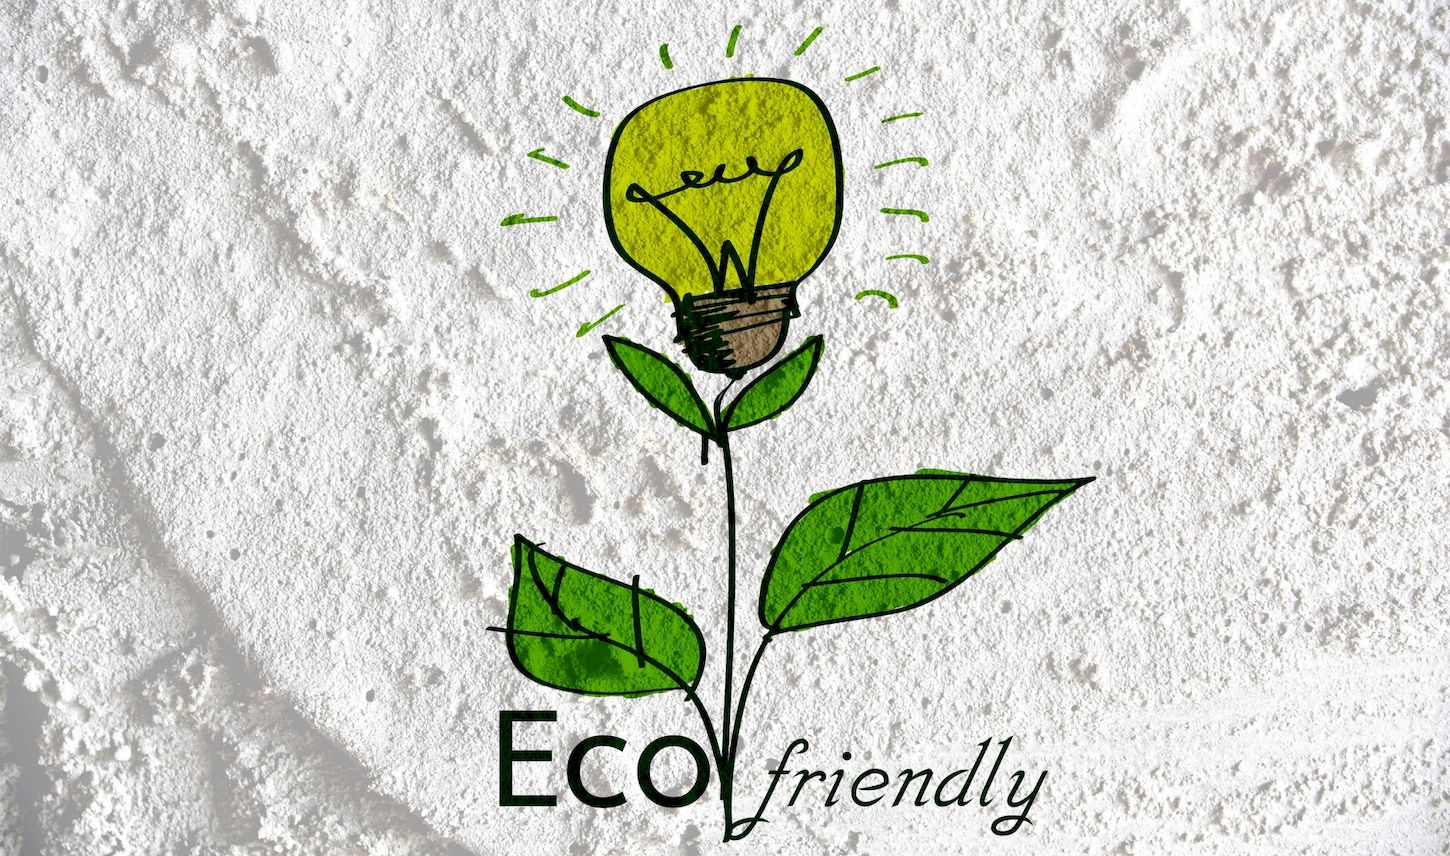 Noticia - 6 de cada 10 consumidores de manera más ecológica, sostenible ética desde la pandemia